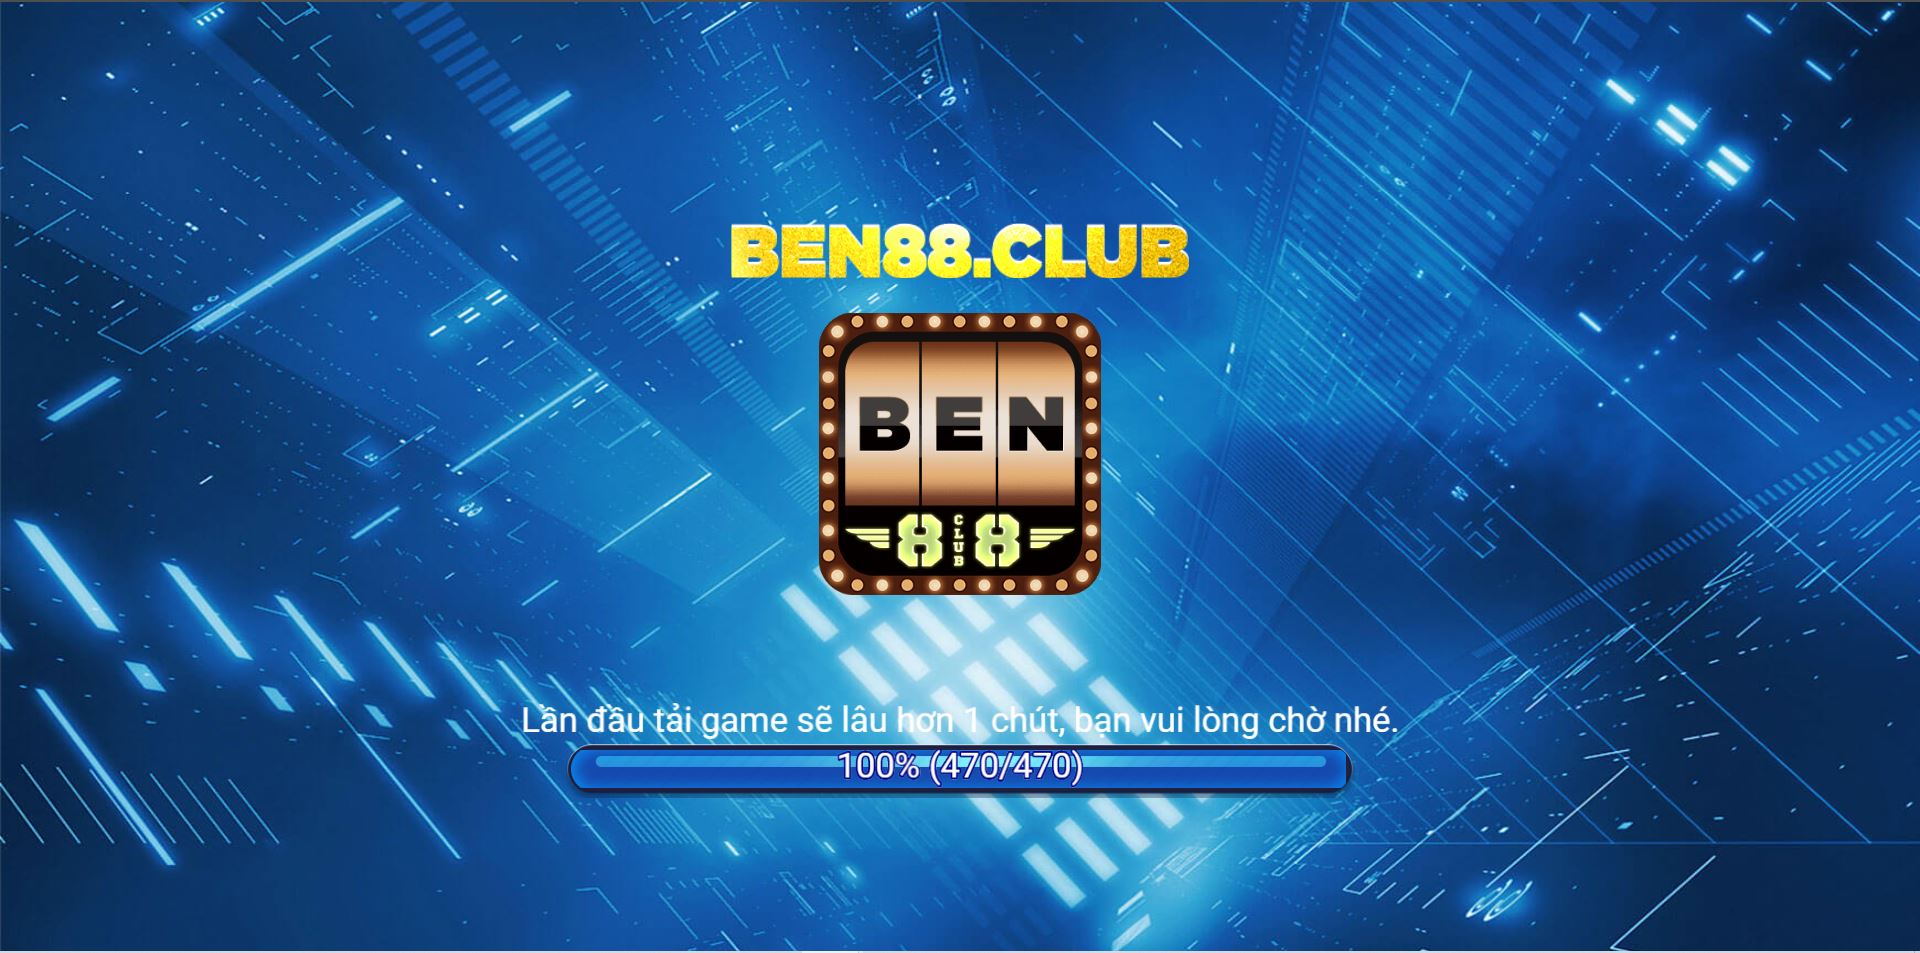 Game no hu Ben88 club co tot khong